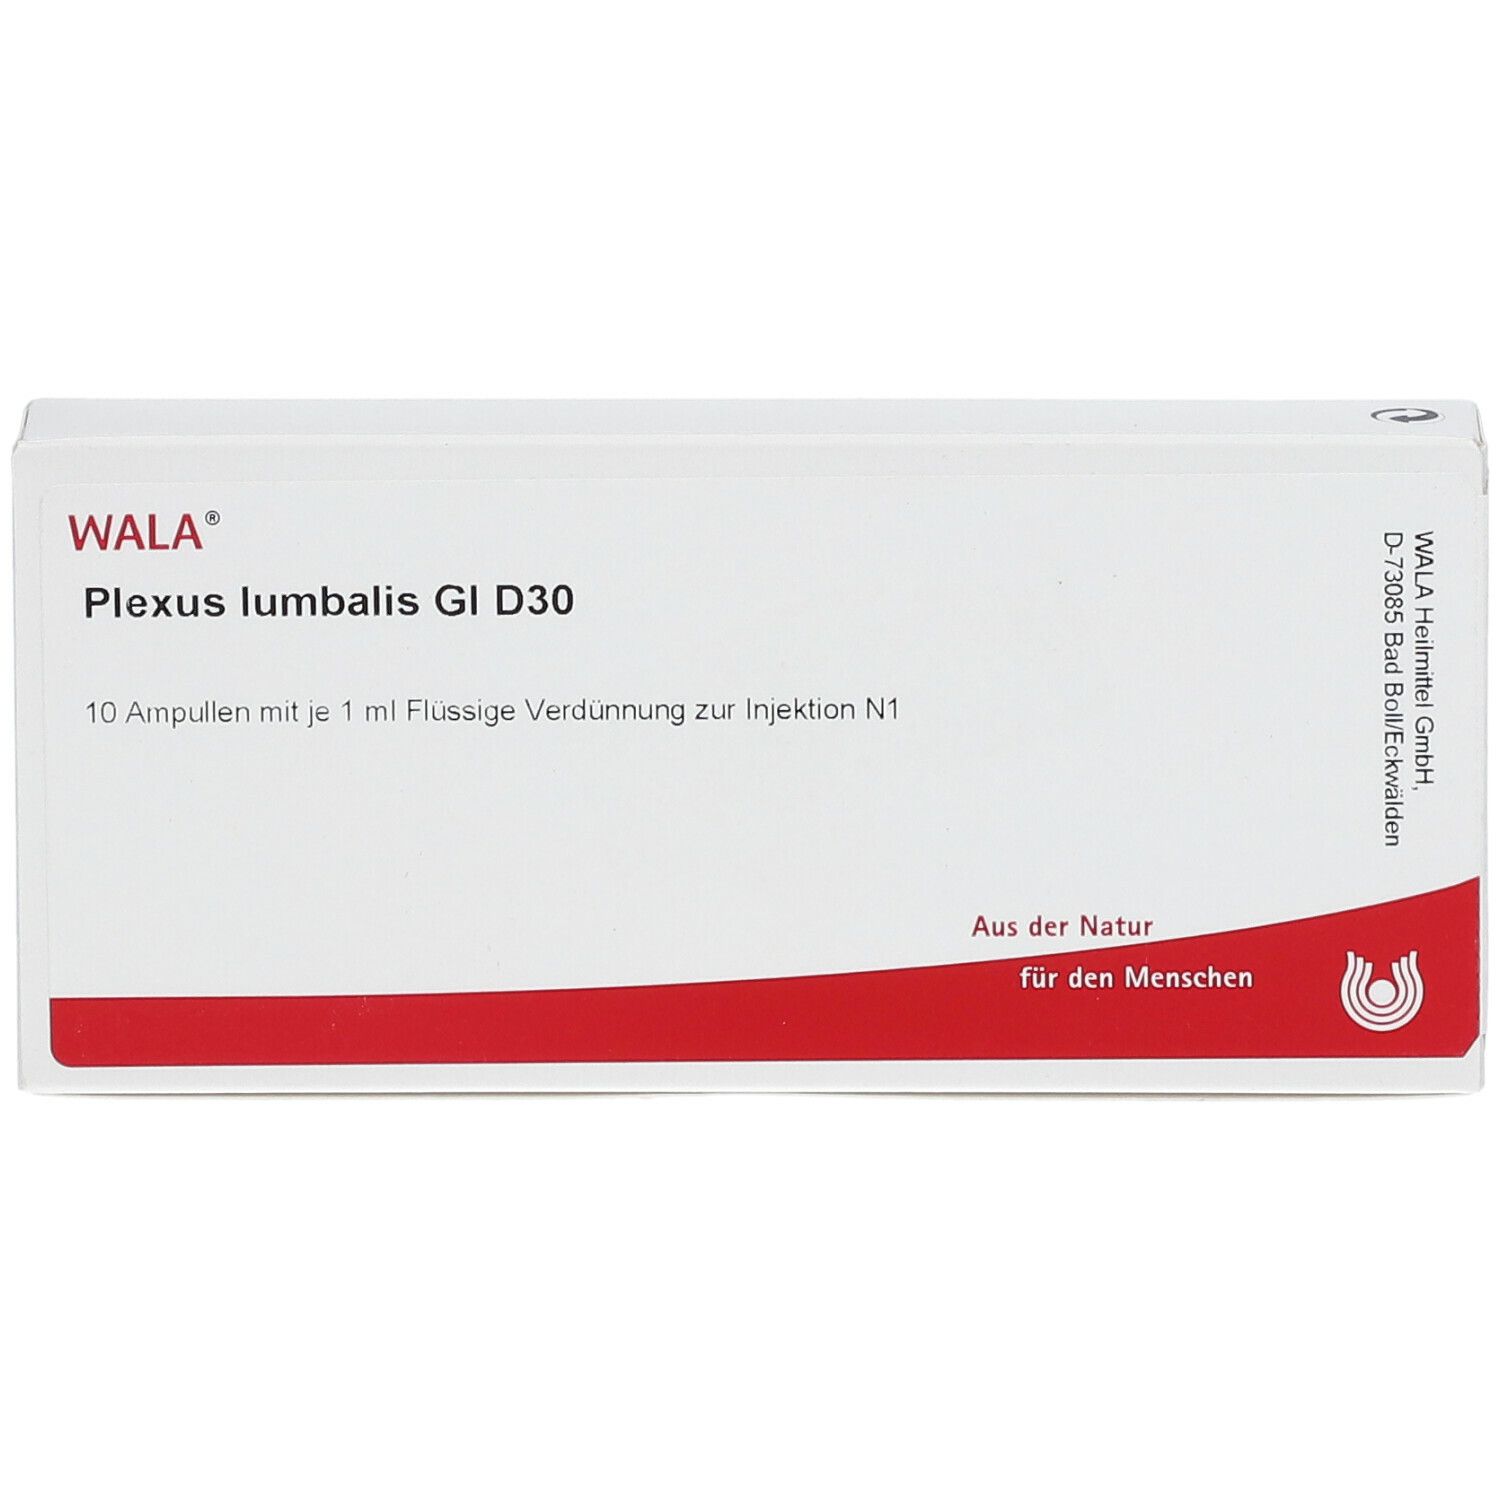 WALA® Plexus lumbalis Gl D 30